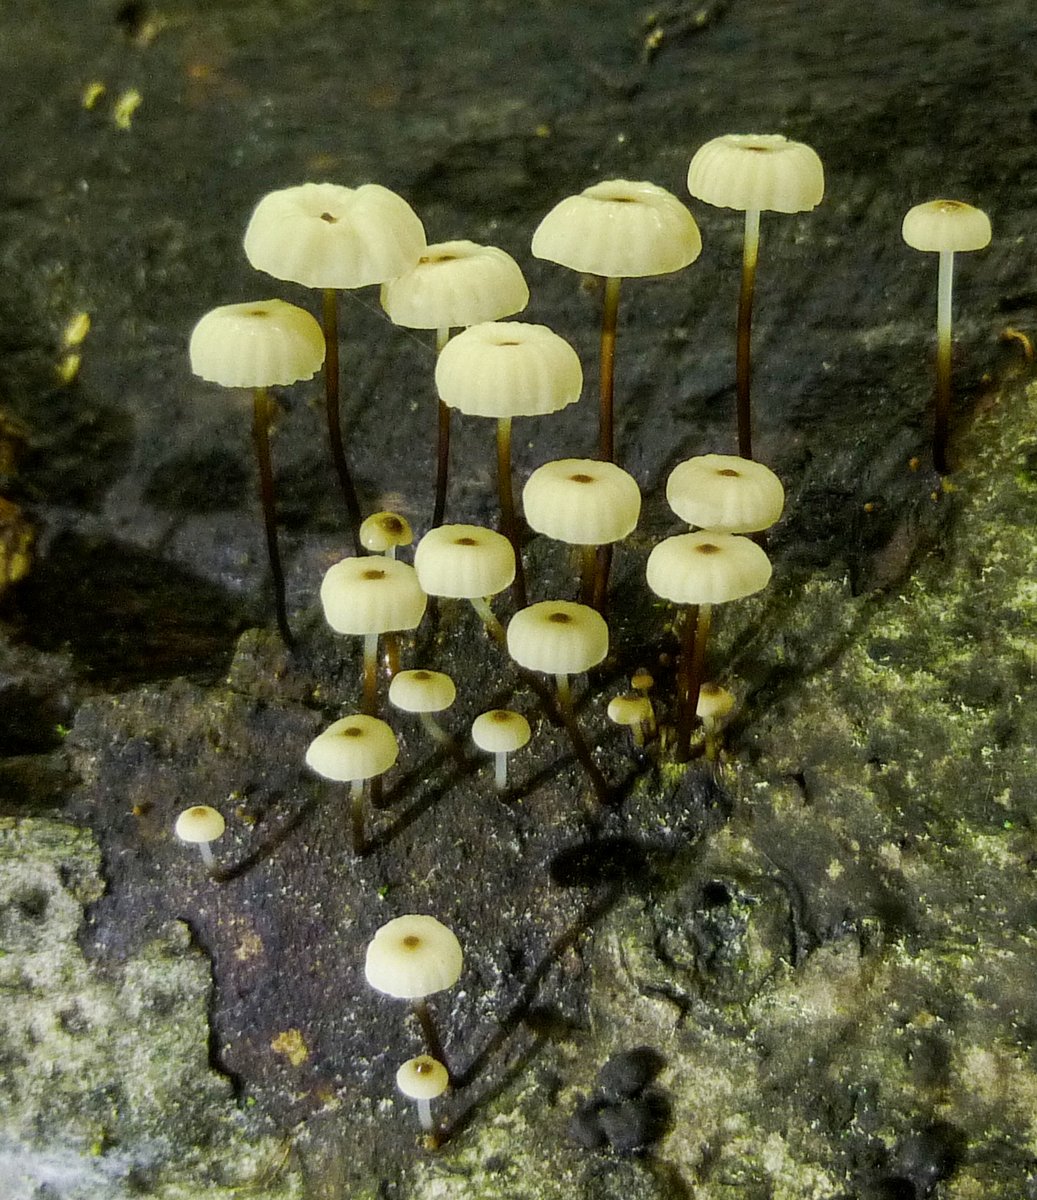 12. Marasmius rotula Mushrooms